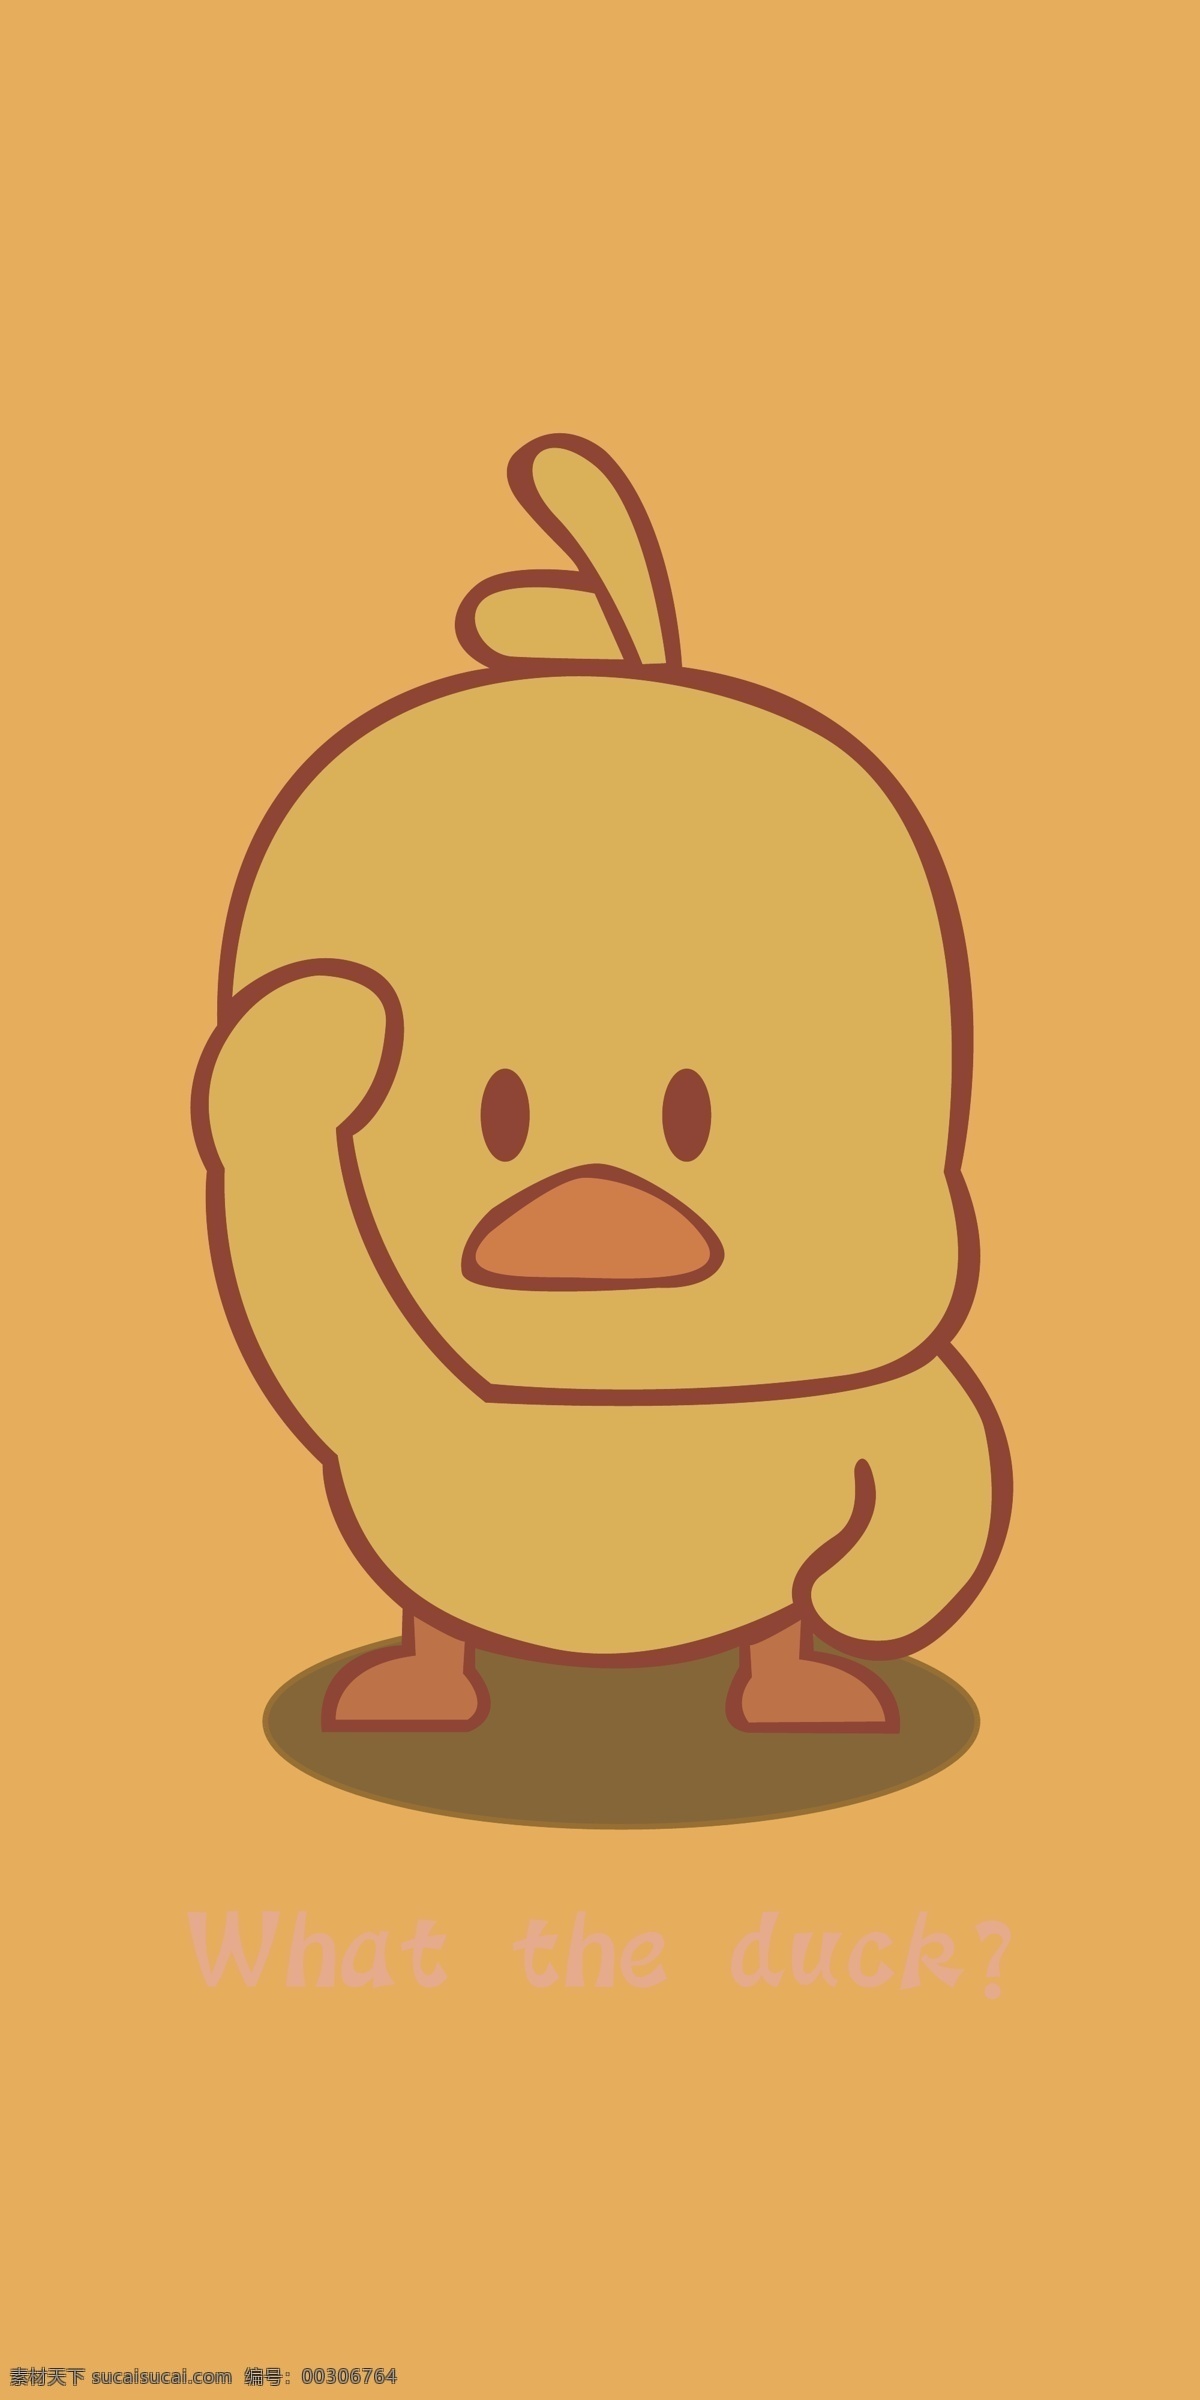 小黄鸭手机壳 小黄鸭 可爱手机壳 卡通图 矢量图 鸭子